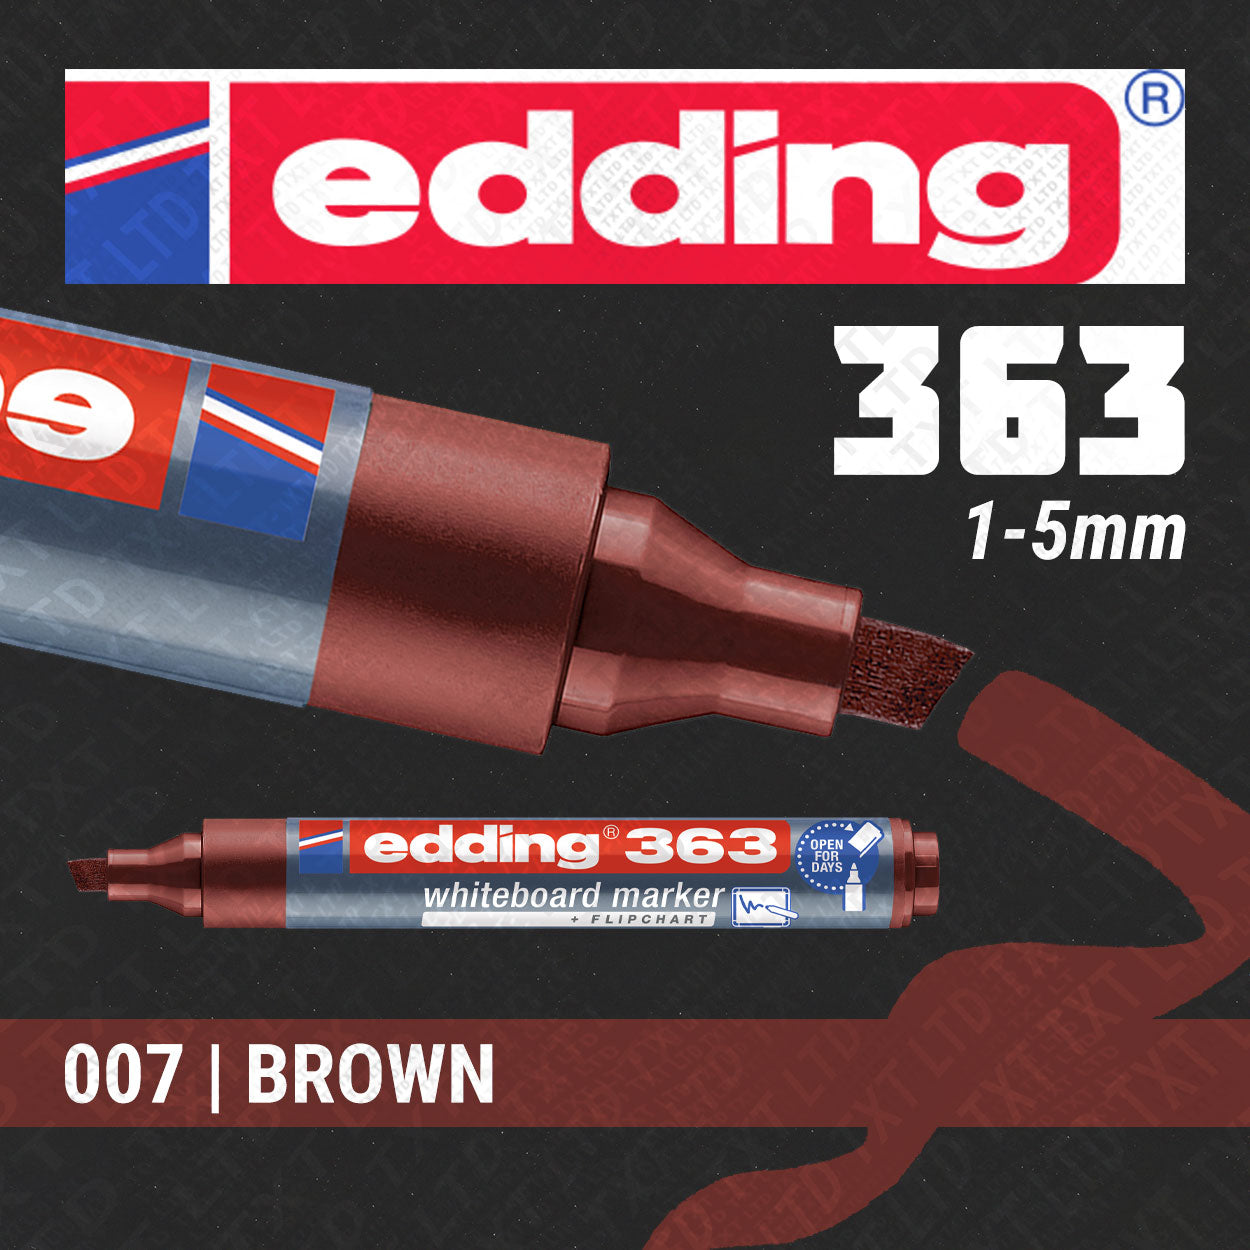 edding 363 Whiteboard/Flipchart Marker